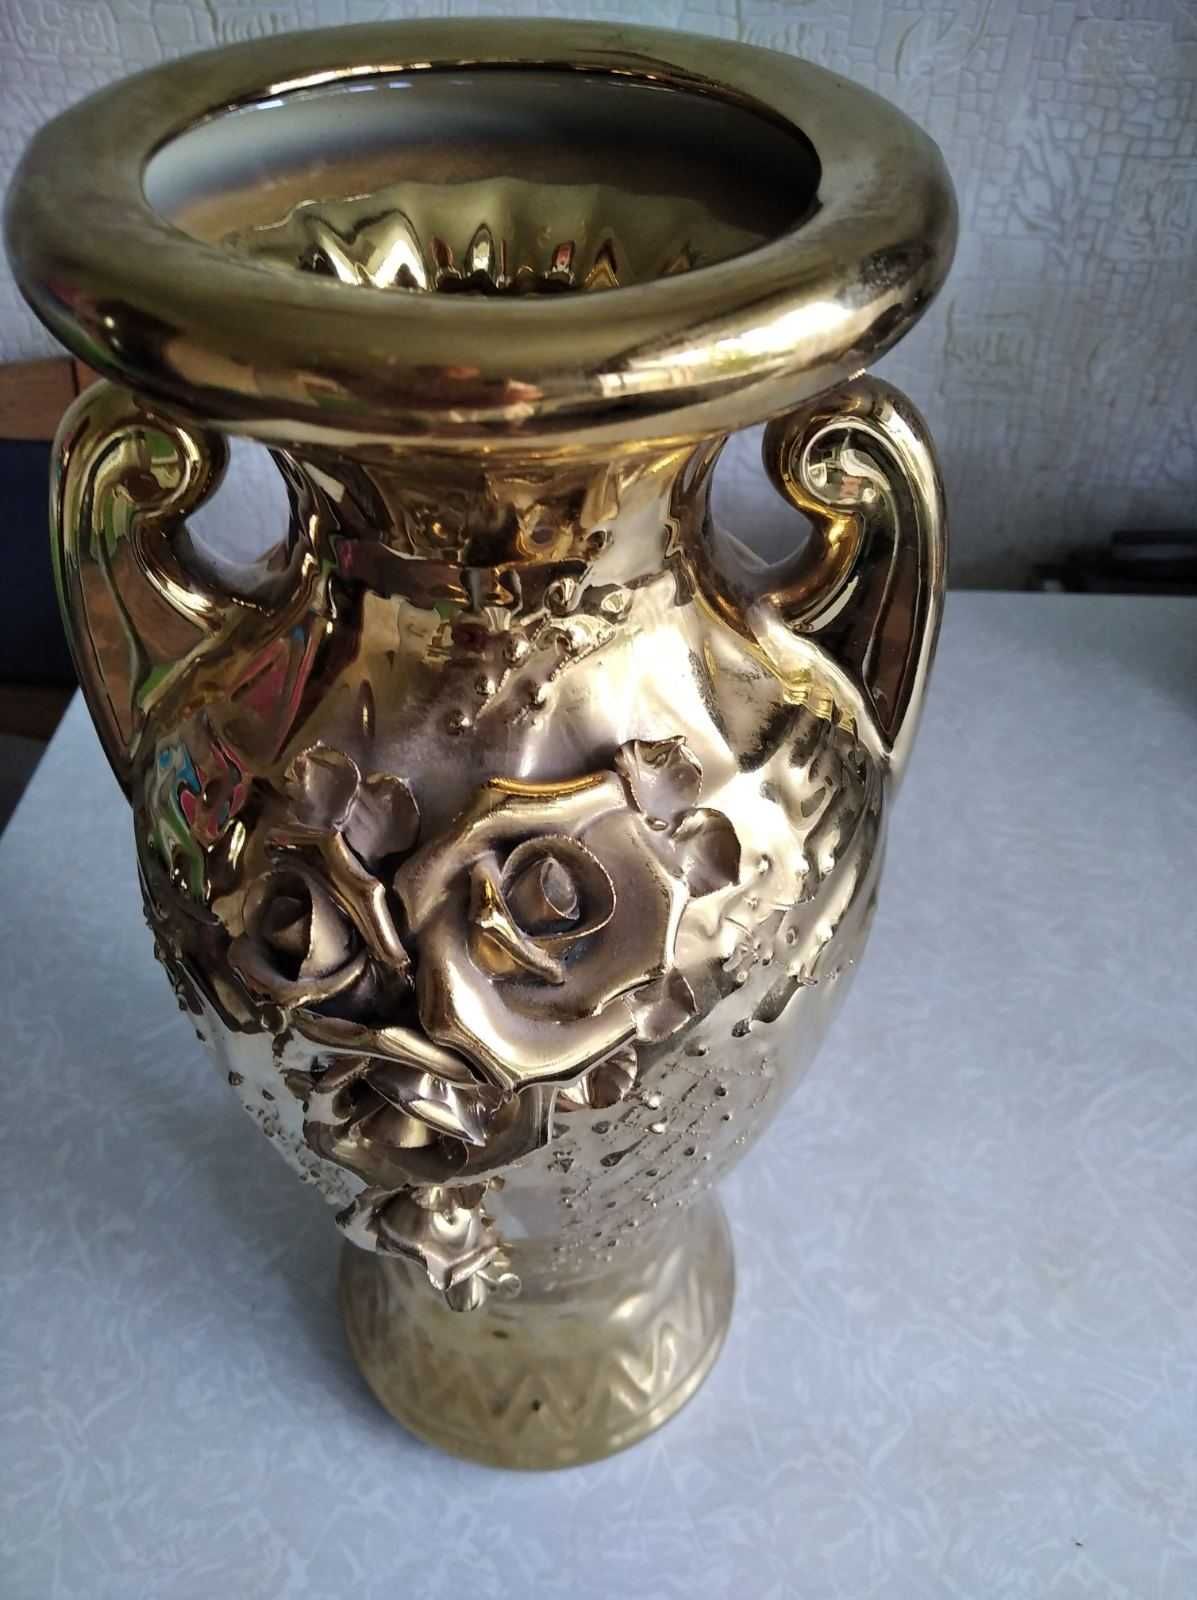 мясорубку,ключи закаточные и три красивые керамические вазы для цветов